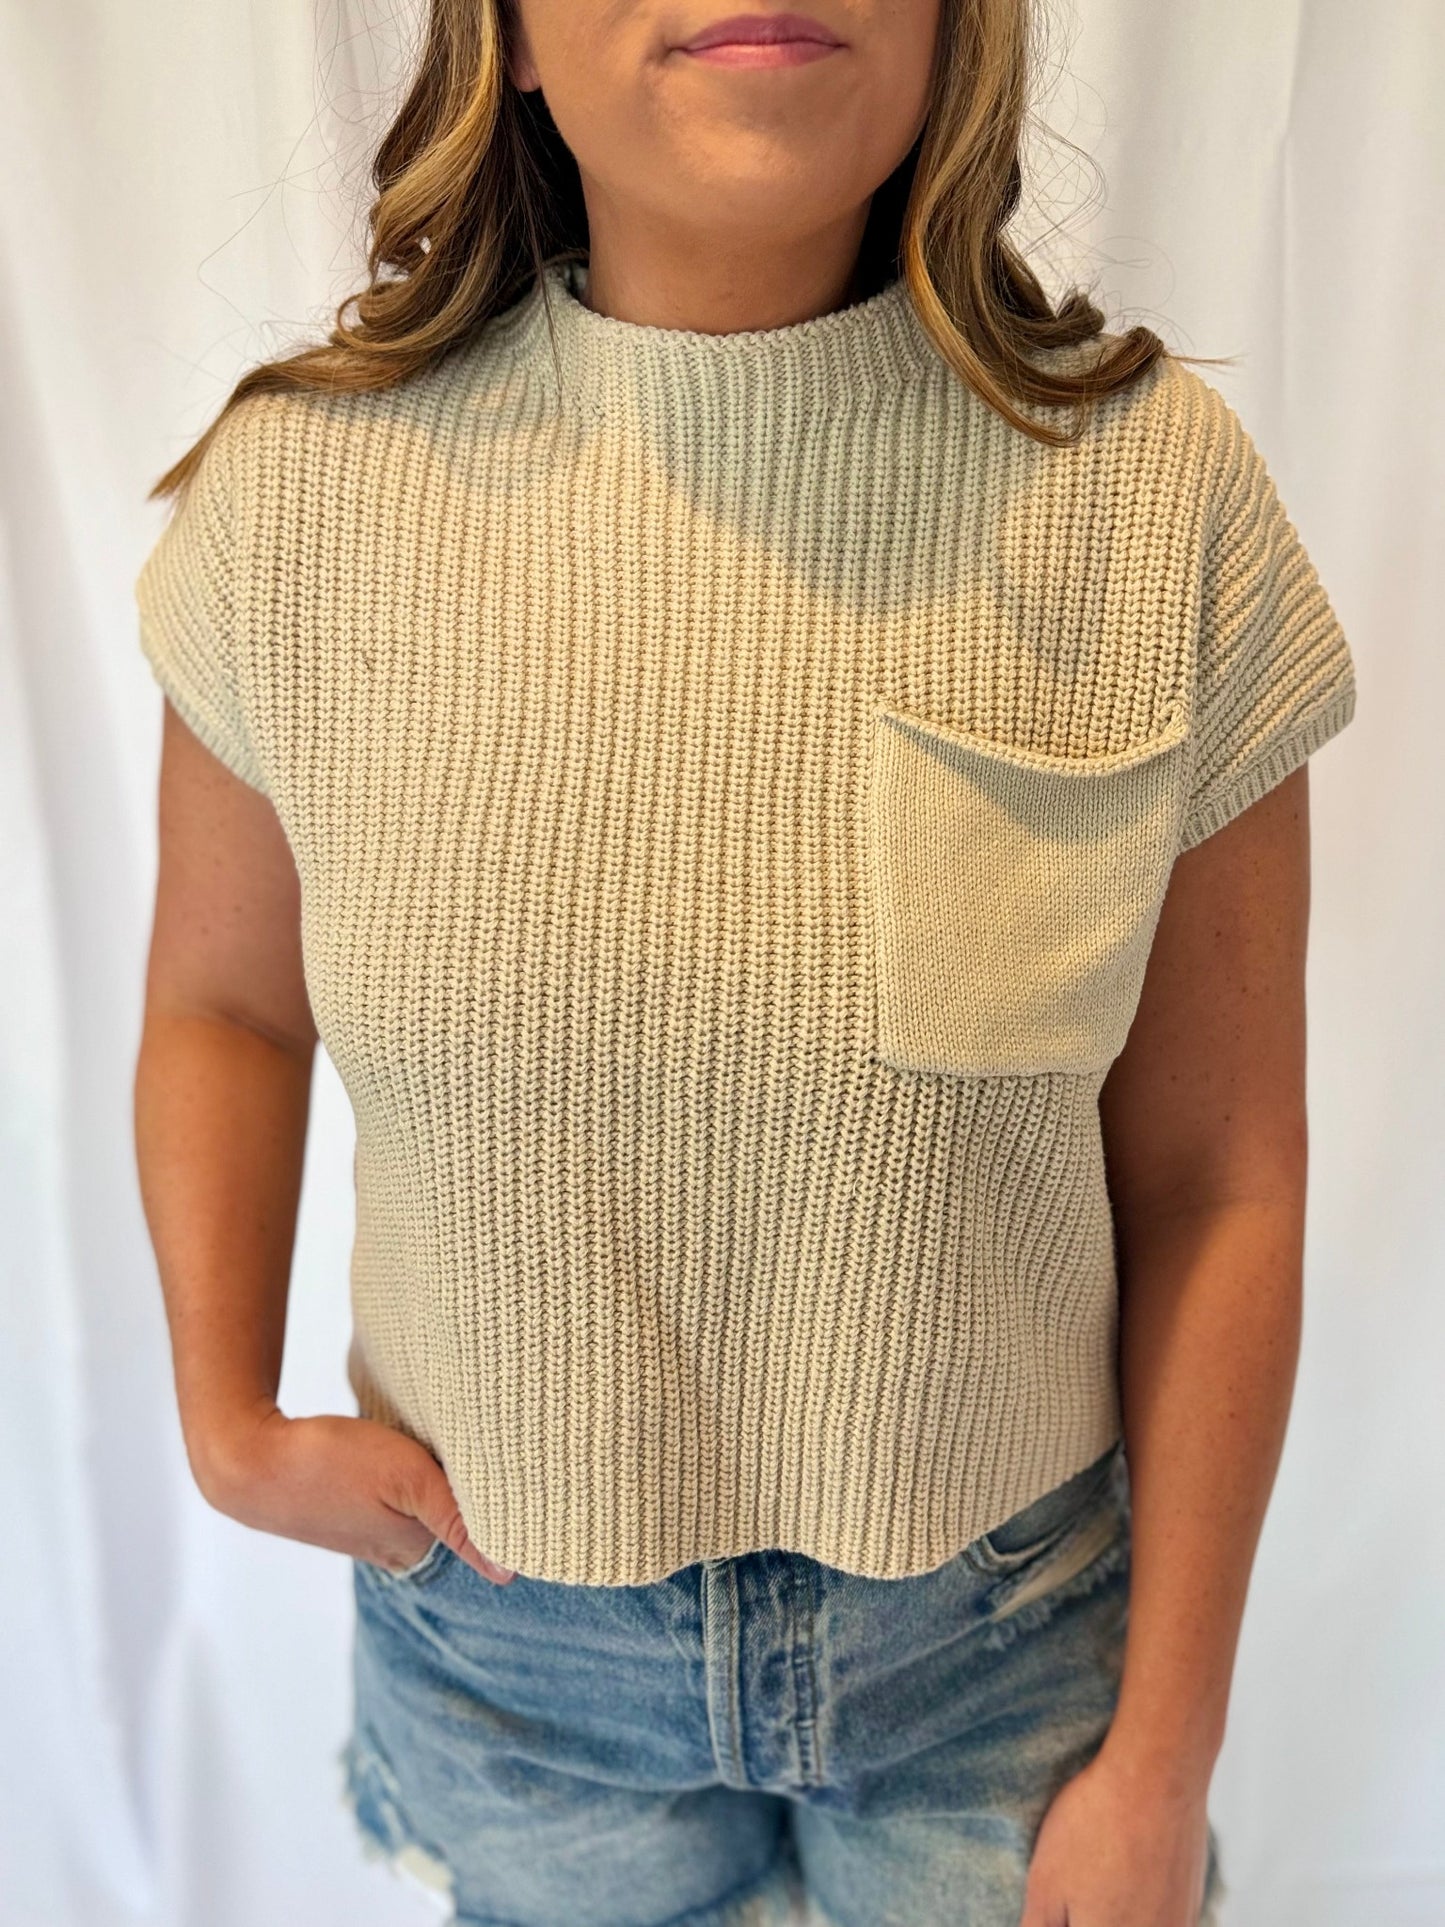 Clara Sand knit sweater tank